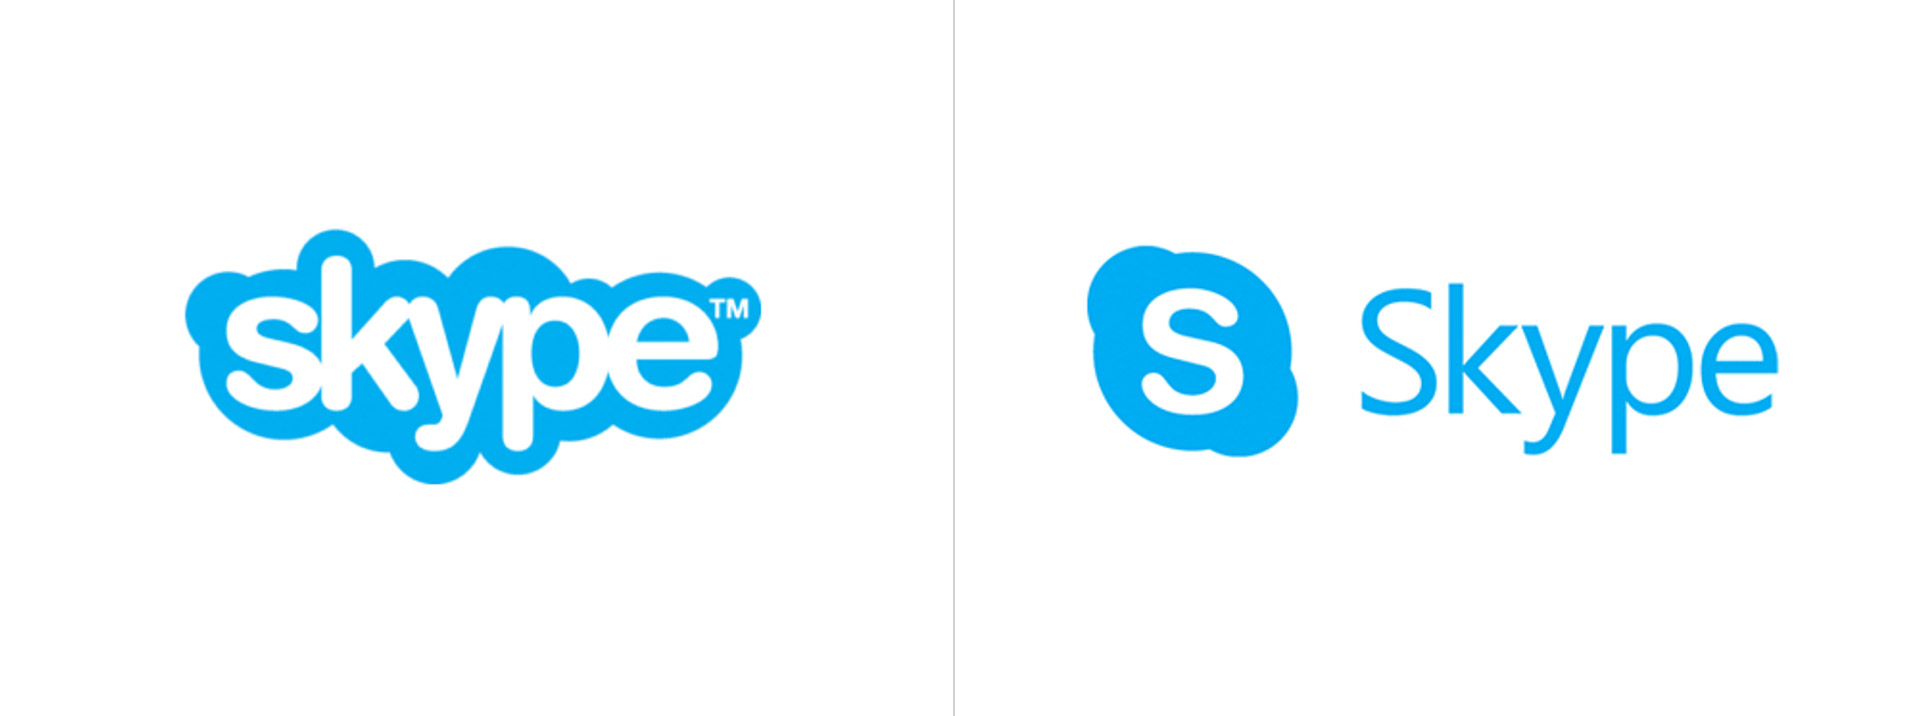 Skype logo - Skype đã chính thức ra mắt logo mới! Với thiết kế đơn giản và thân thiện hơn, phiên bản mới của Skype sẽ mang lại trải nghiệm tốt hơn cho người dùng. Hãy cùng xem hình ảnh mới nhất về logo Skype và trải nghiệm ngay những tính năng đầy hứa hẹn từ phiên bản mới này!